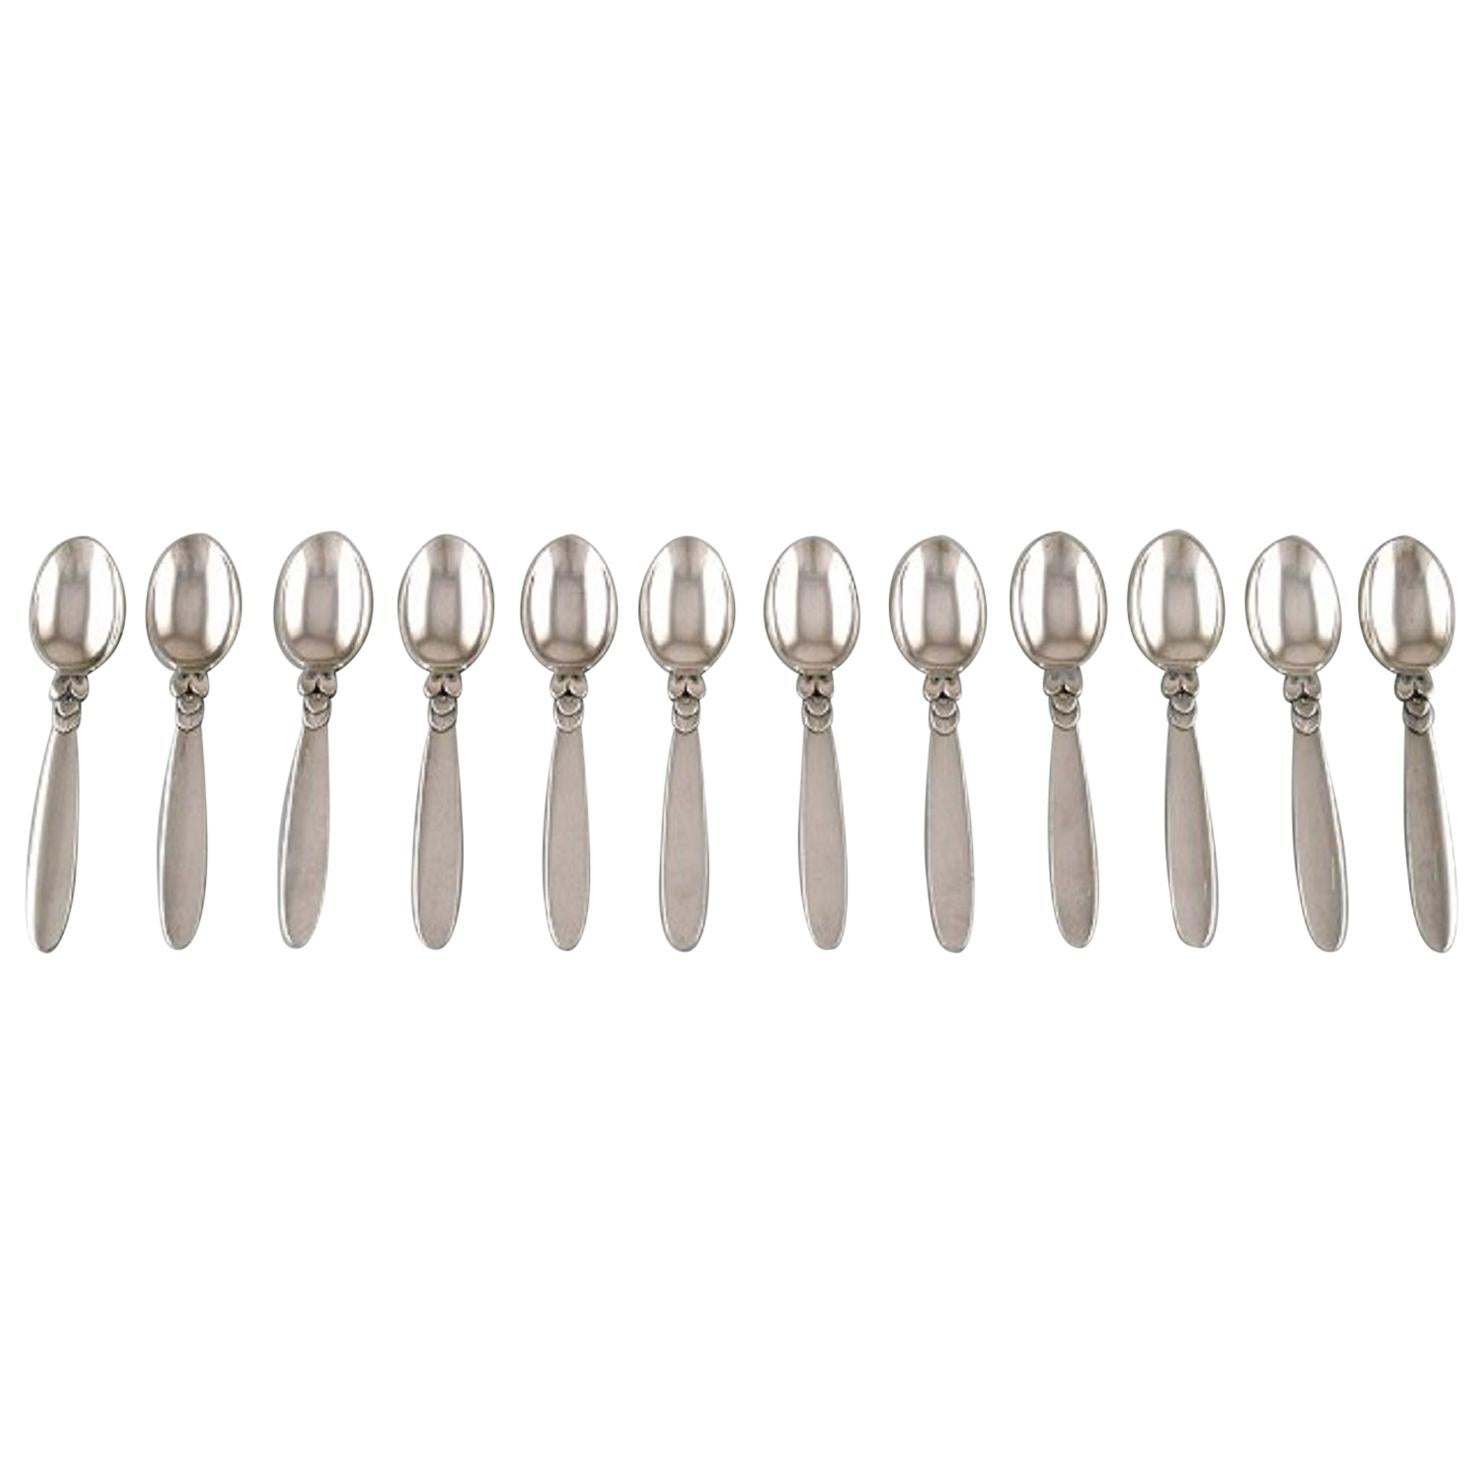 Georg Jensen "Cactus" Cutlery, Twelve Coffee Spoons in Sterling Silver